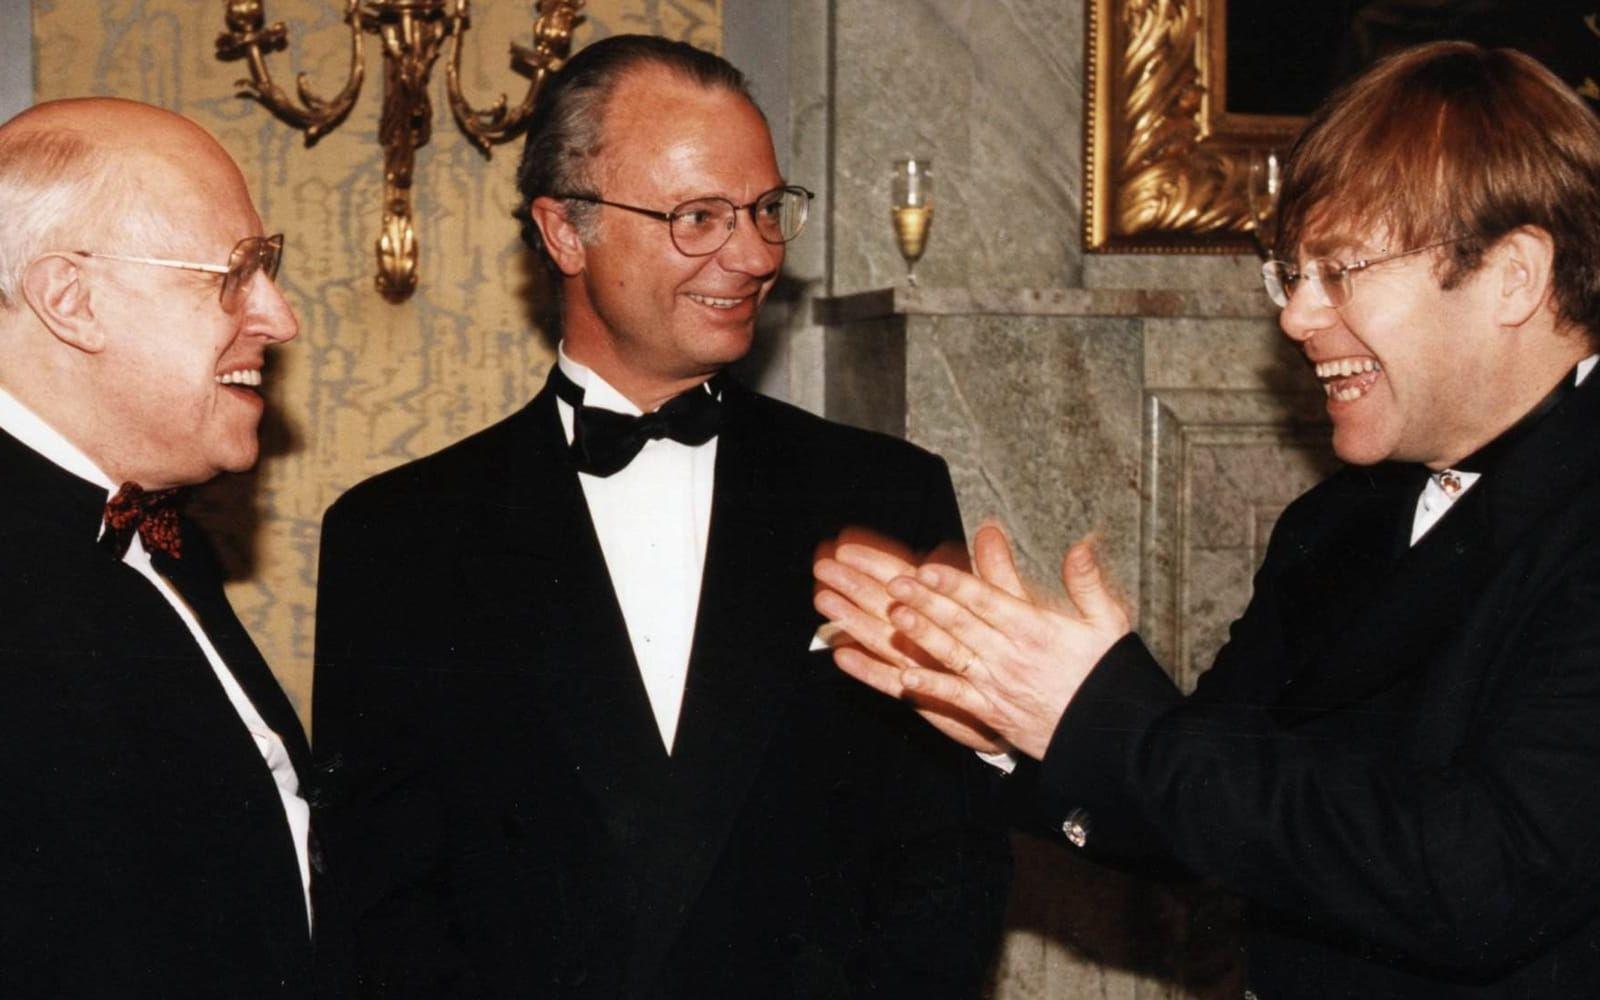 1995: Elton John i samspråk med kungen och den ryske tonsättaren och cellomästaren Mstislav Rostropovitj i samband med Polarprisutdelningen. På meritlistan märks, utöver Polarpriset, även fem Grammy Awards, en Tony Award och en Oscar för bästa filmlåt. Foto: TT